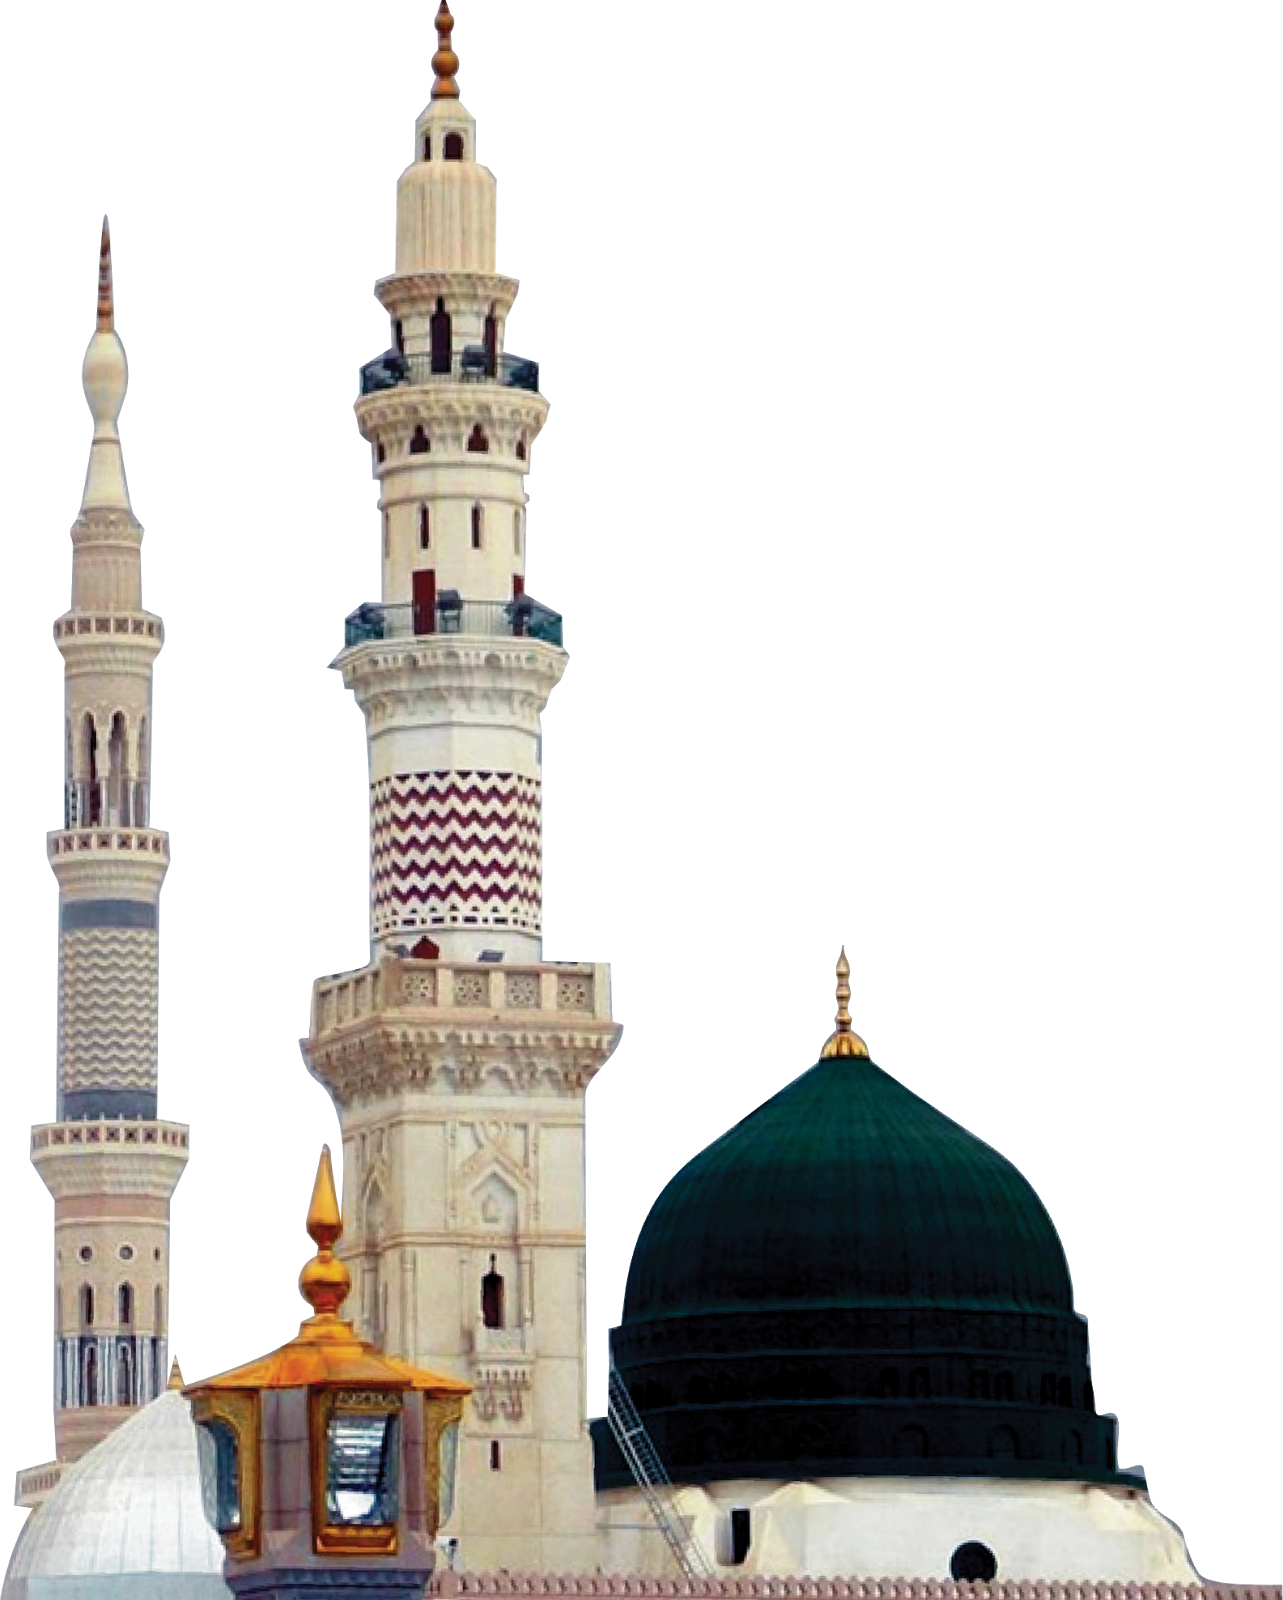 Masjid al Haram u2013 Saudi A